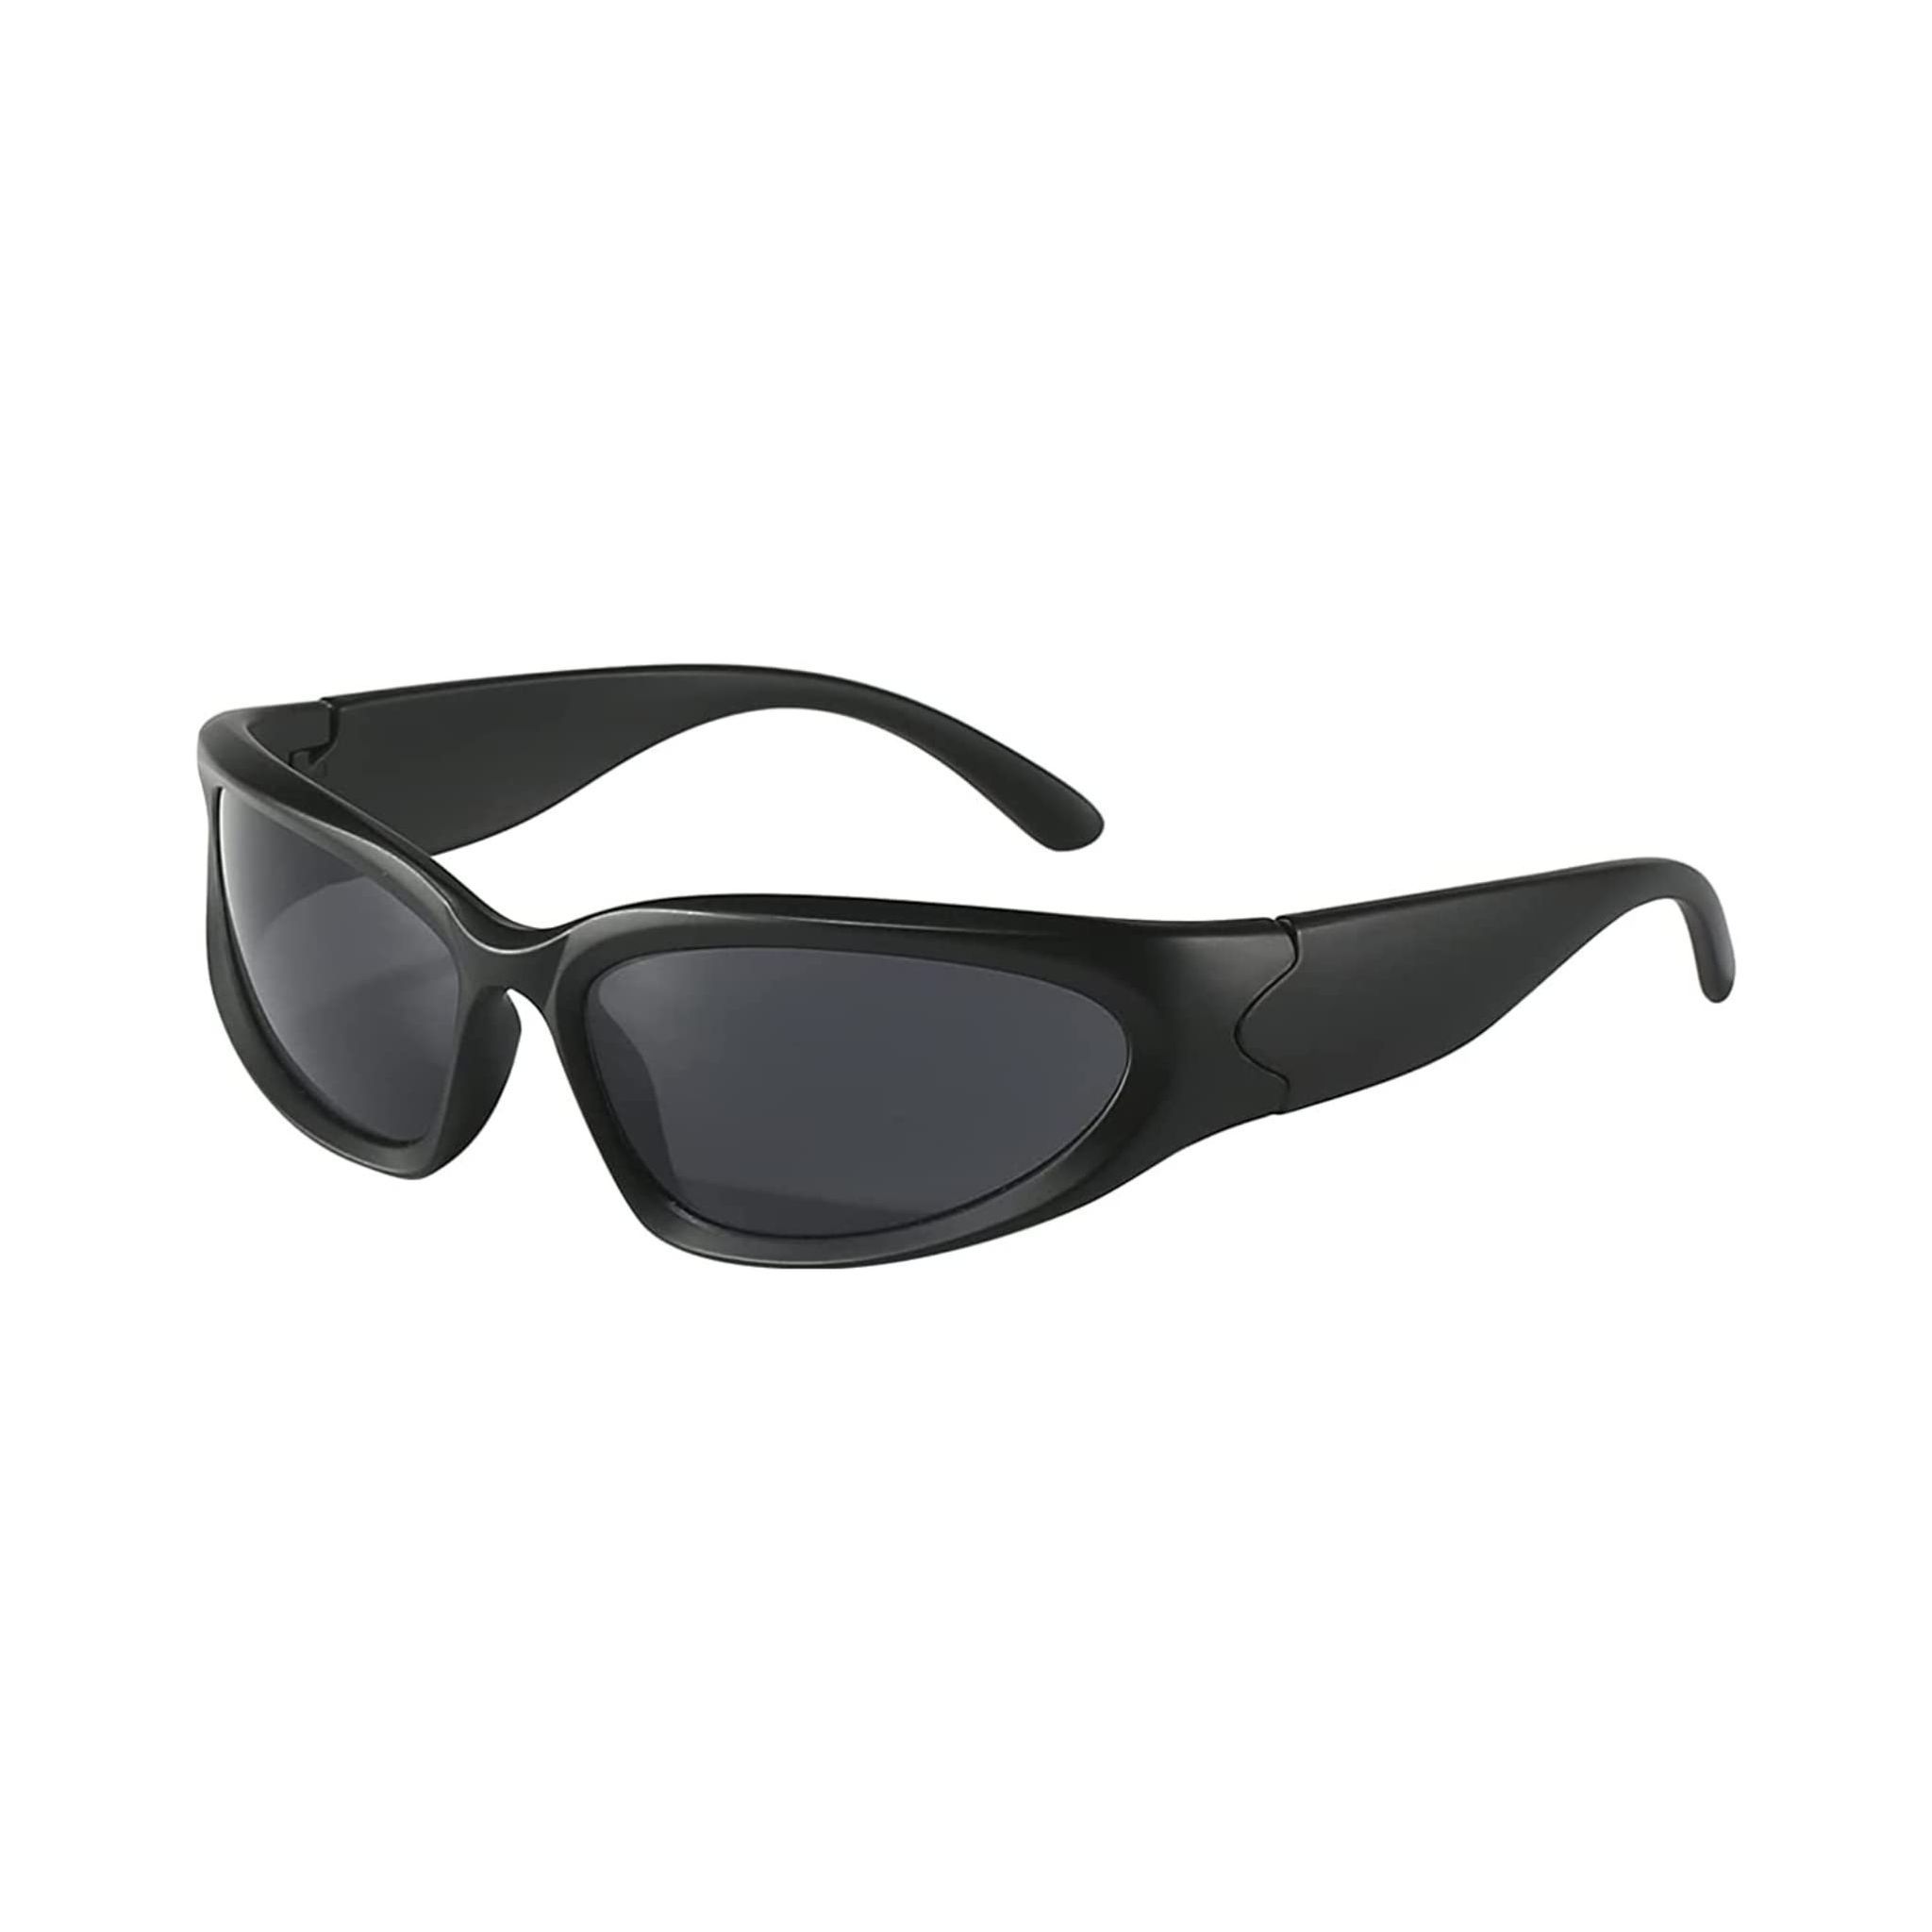 Share 139+ sunglasses for men paytm best